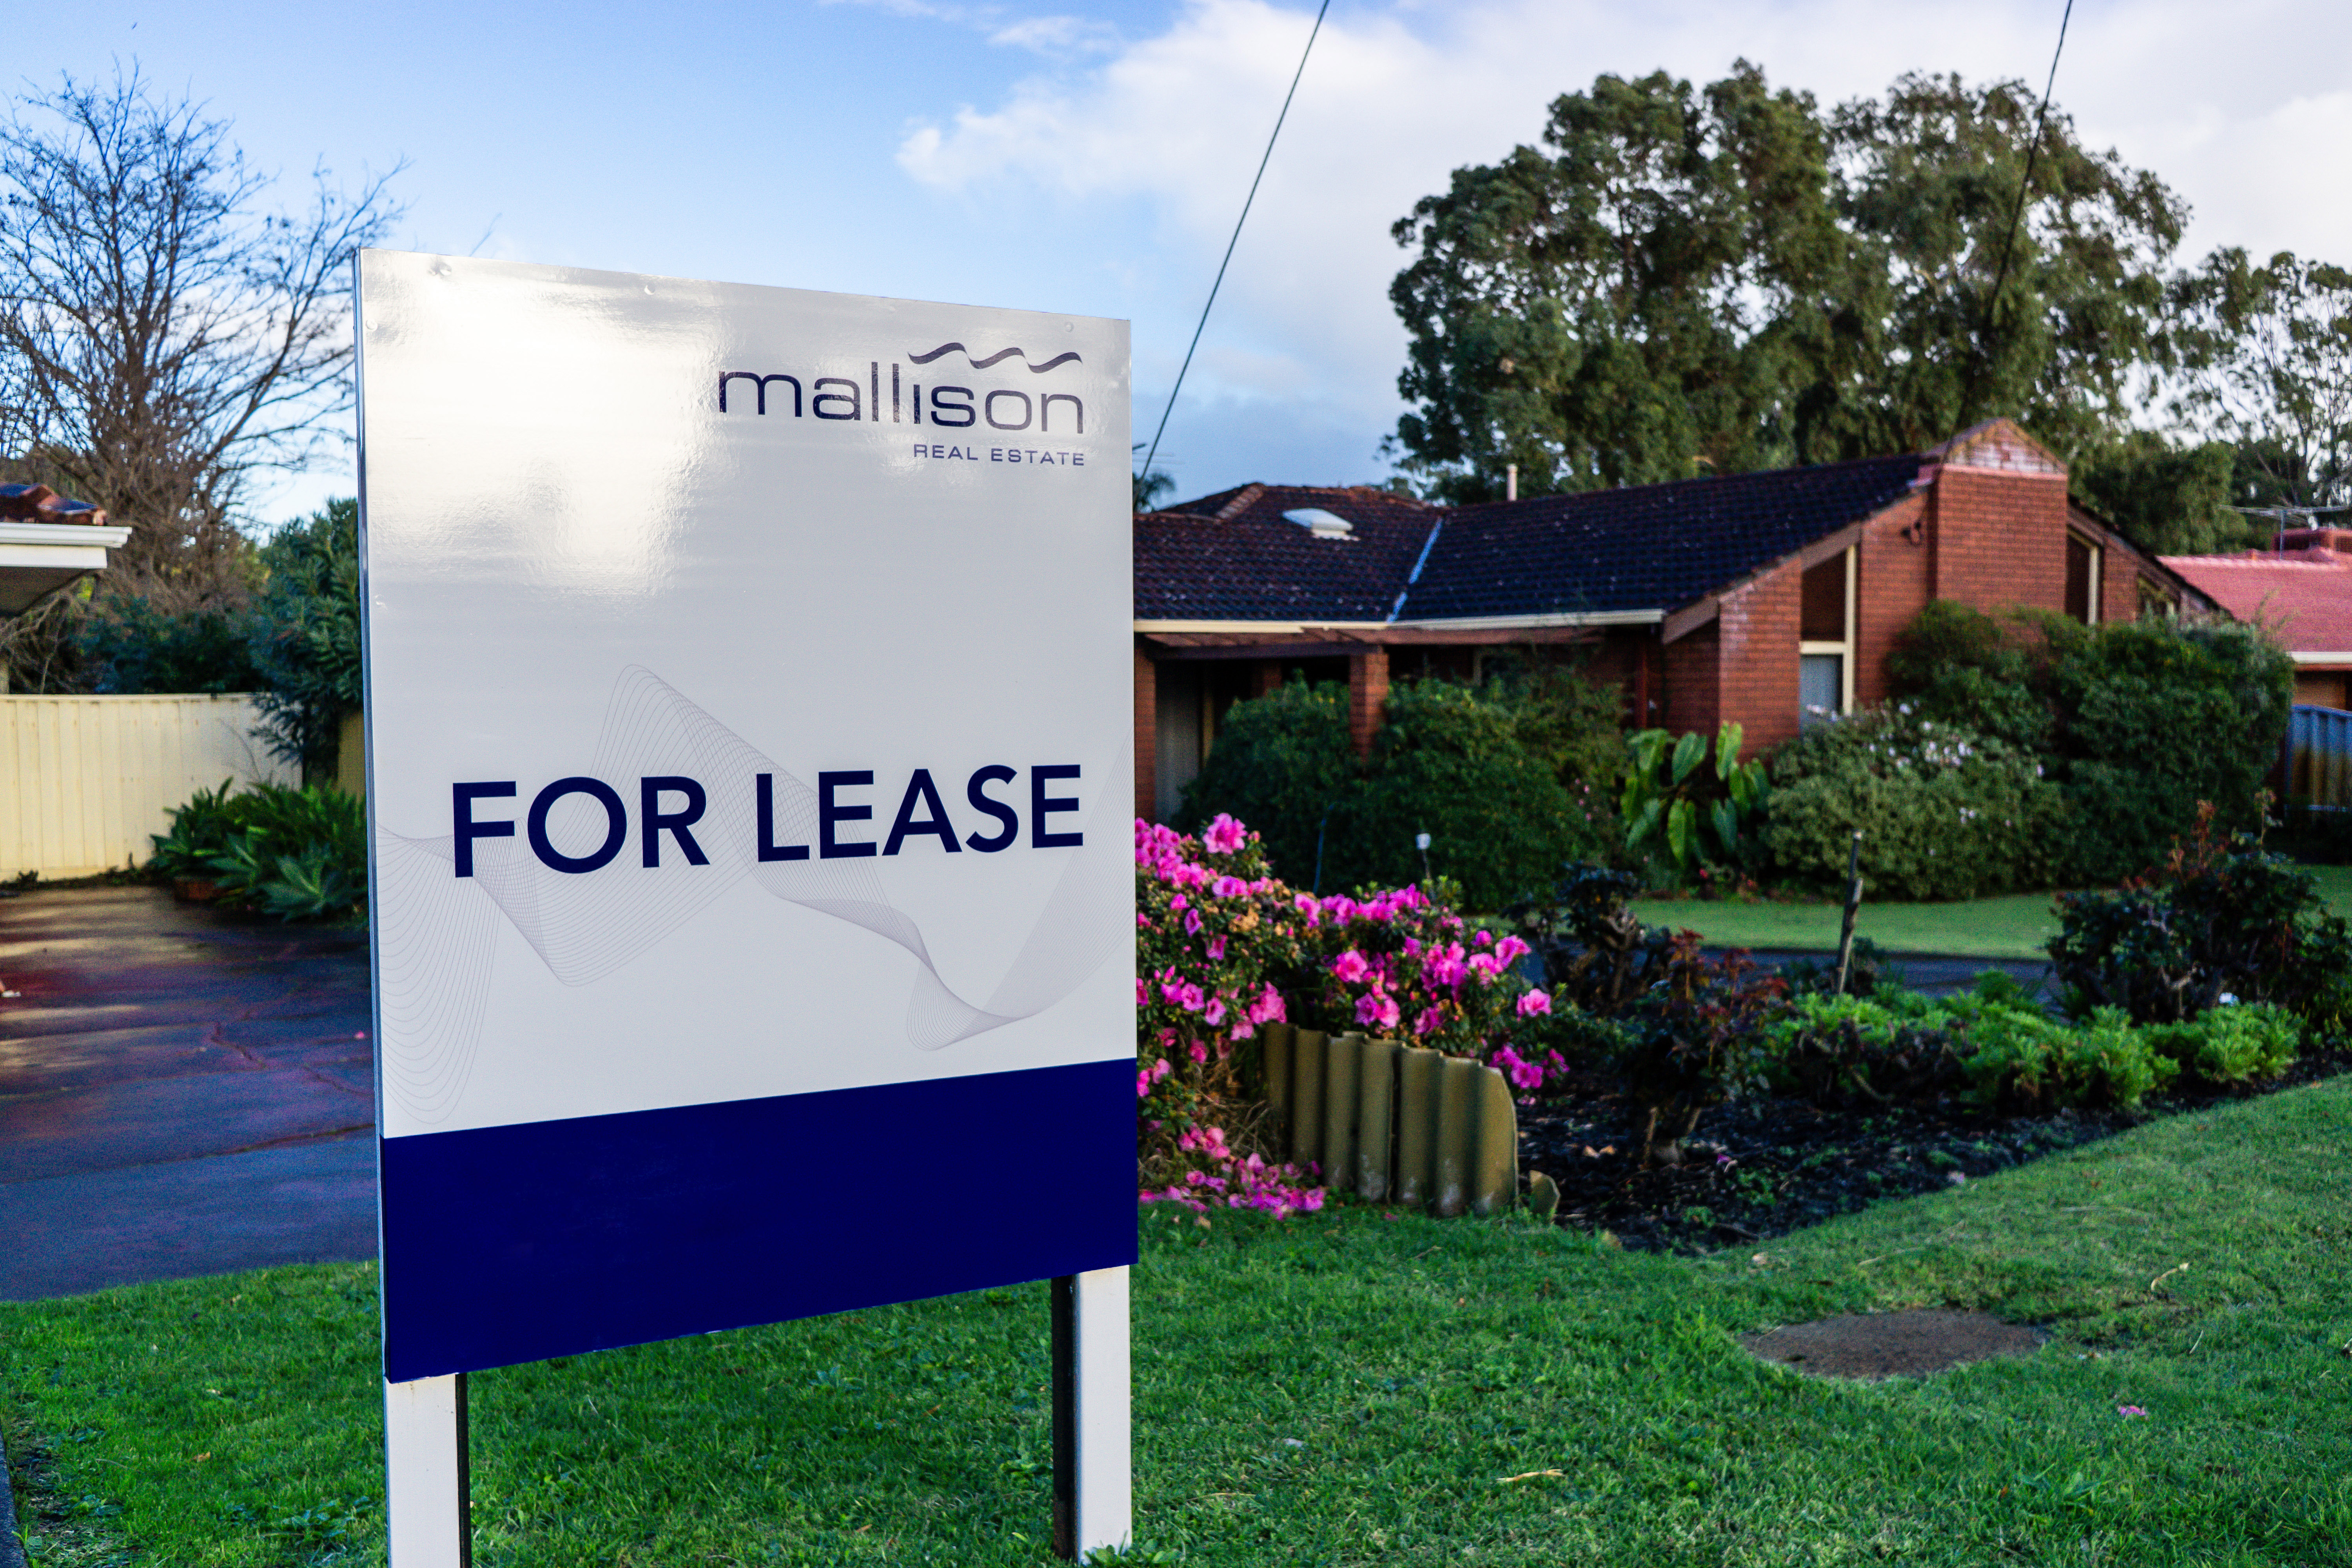 為緩解住房供應 西澳政府獎勵空置房業主出租房產